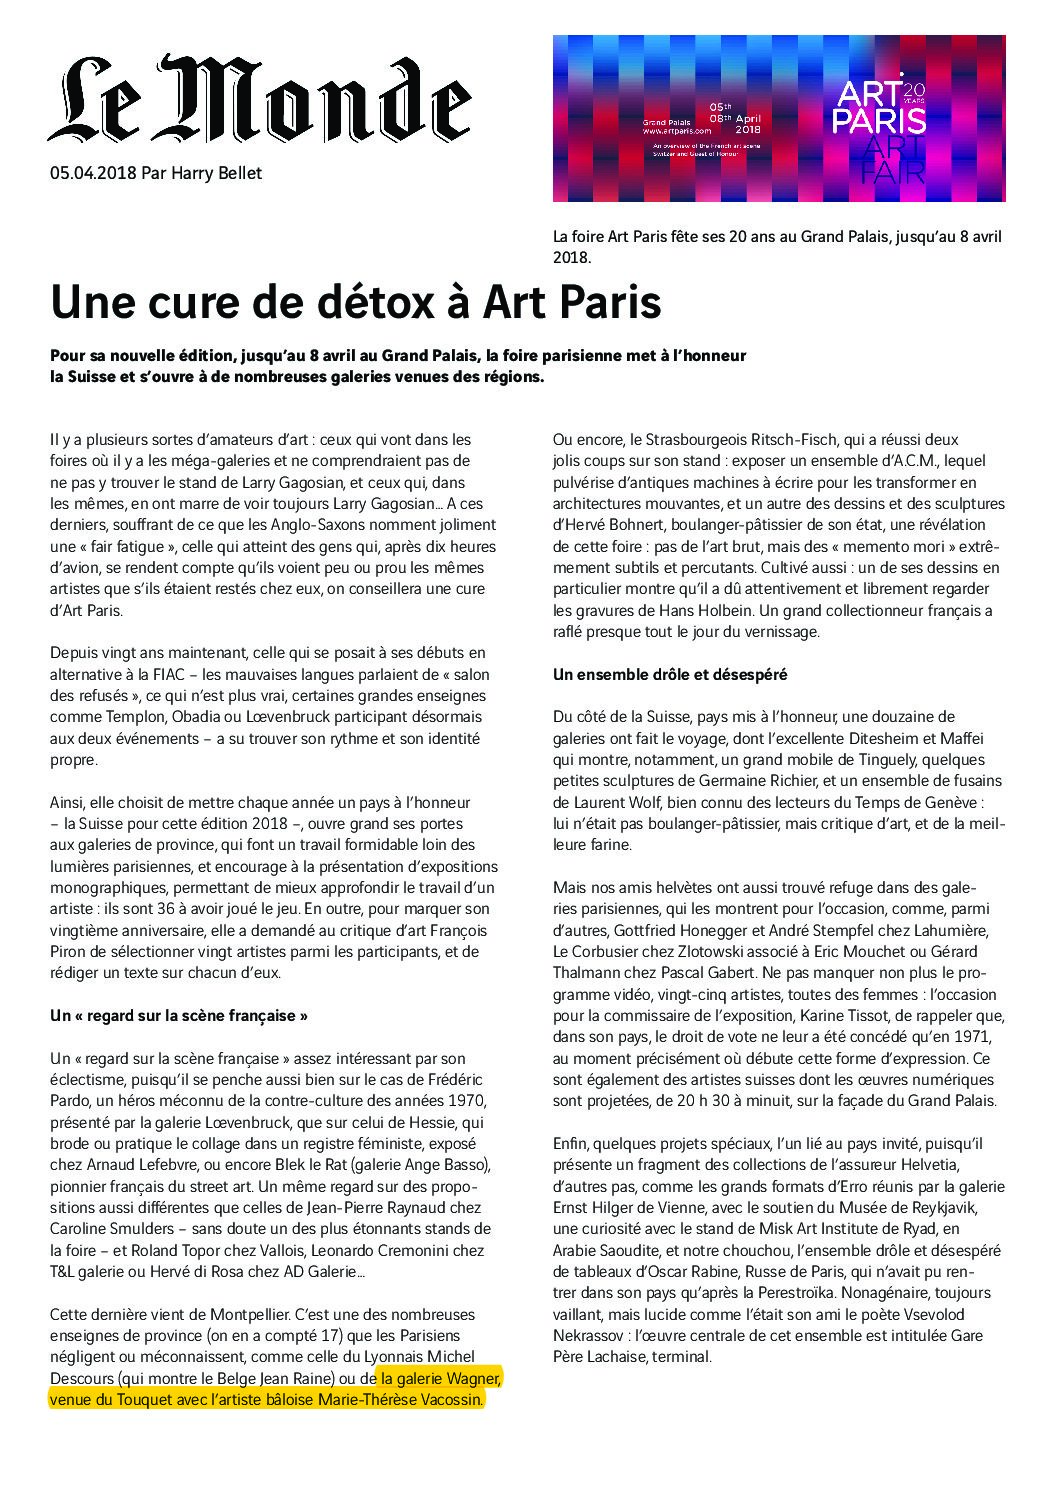 Lire la suite à propos de l’article Le Monde – Art Paris Art Fair